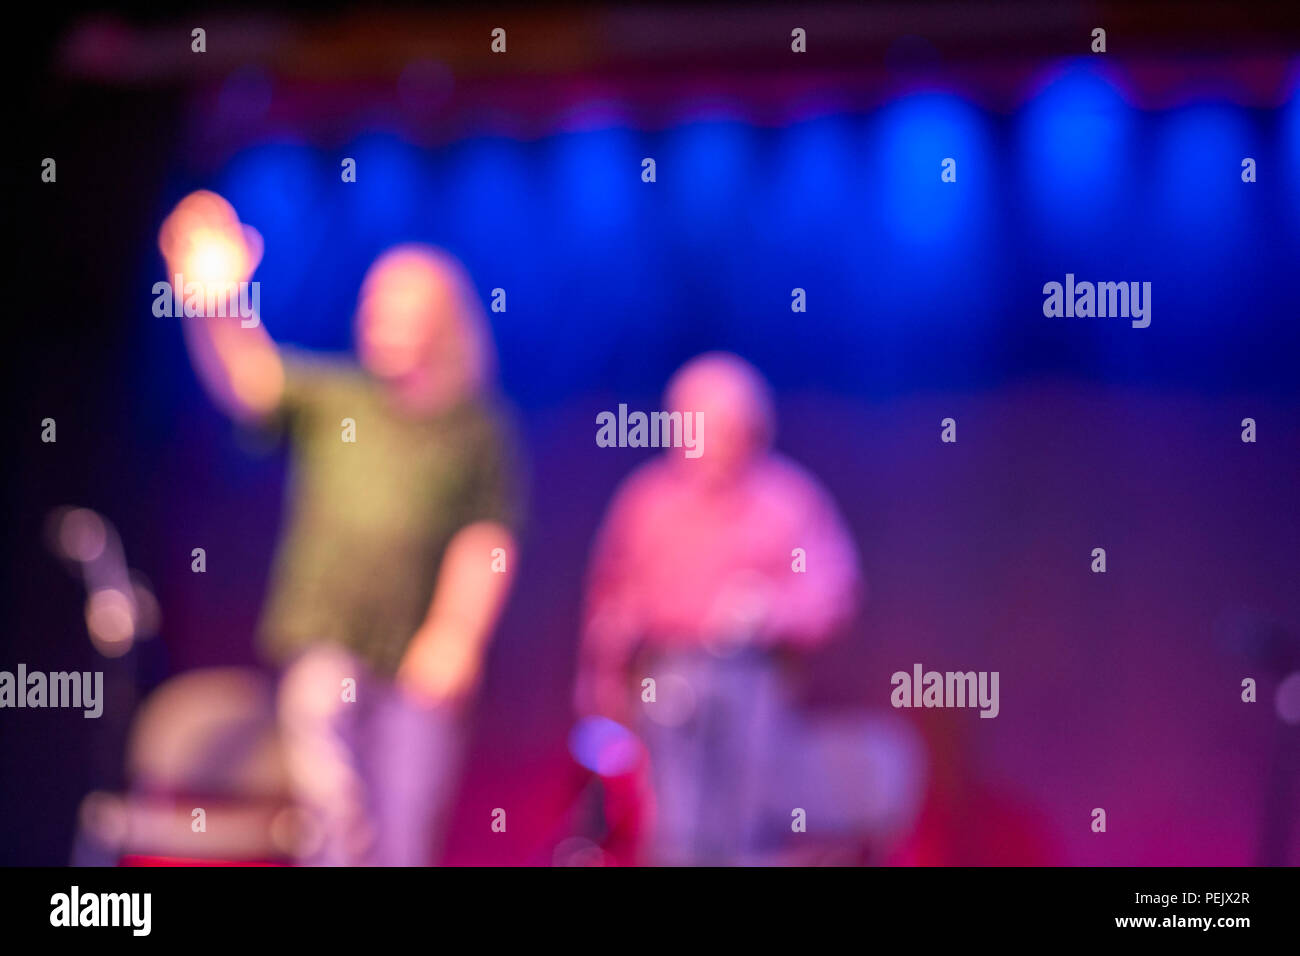 Flou générique hors focale image de deux personnes sur une scène Banque D'Images